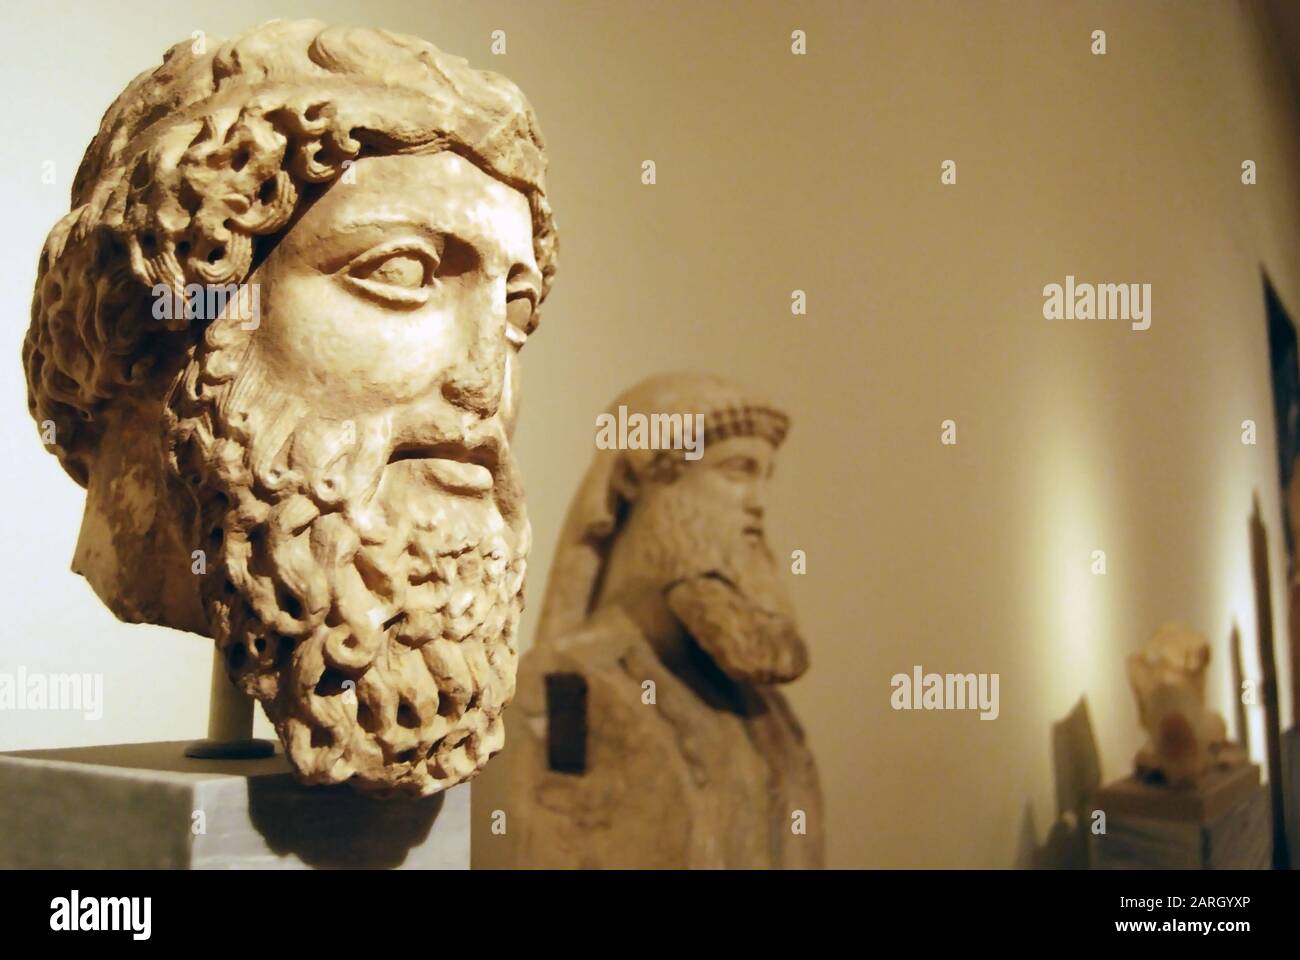 Athènes 12/01/2019 tête et buste mâles, deux hommes barbu avec des cheveux frisés, anciennes sculptures grecques dans le musée, point de mire sélectif Banque D'Images